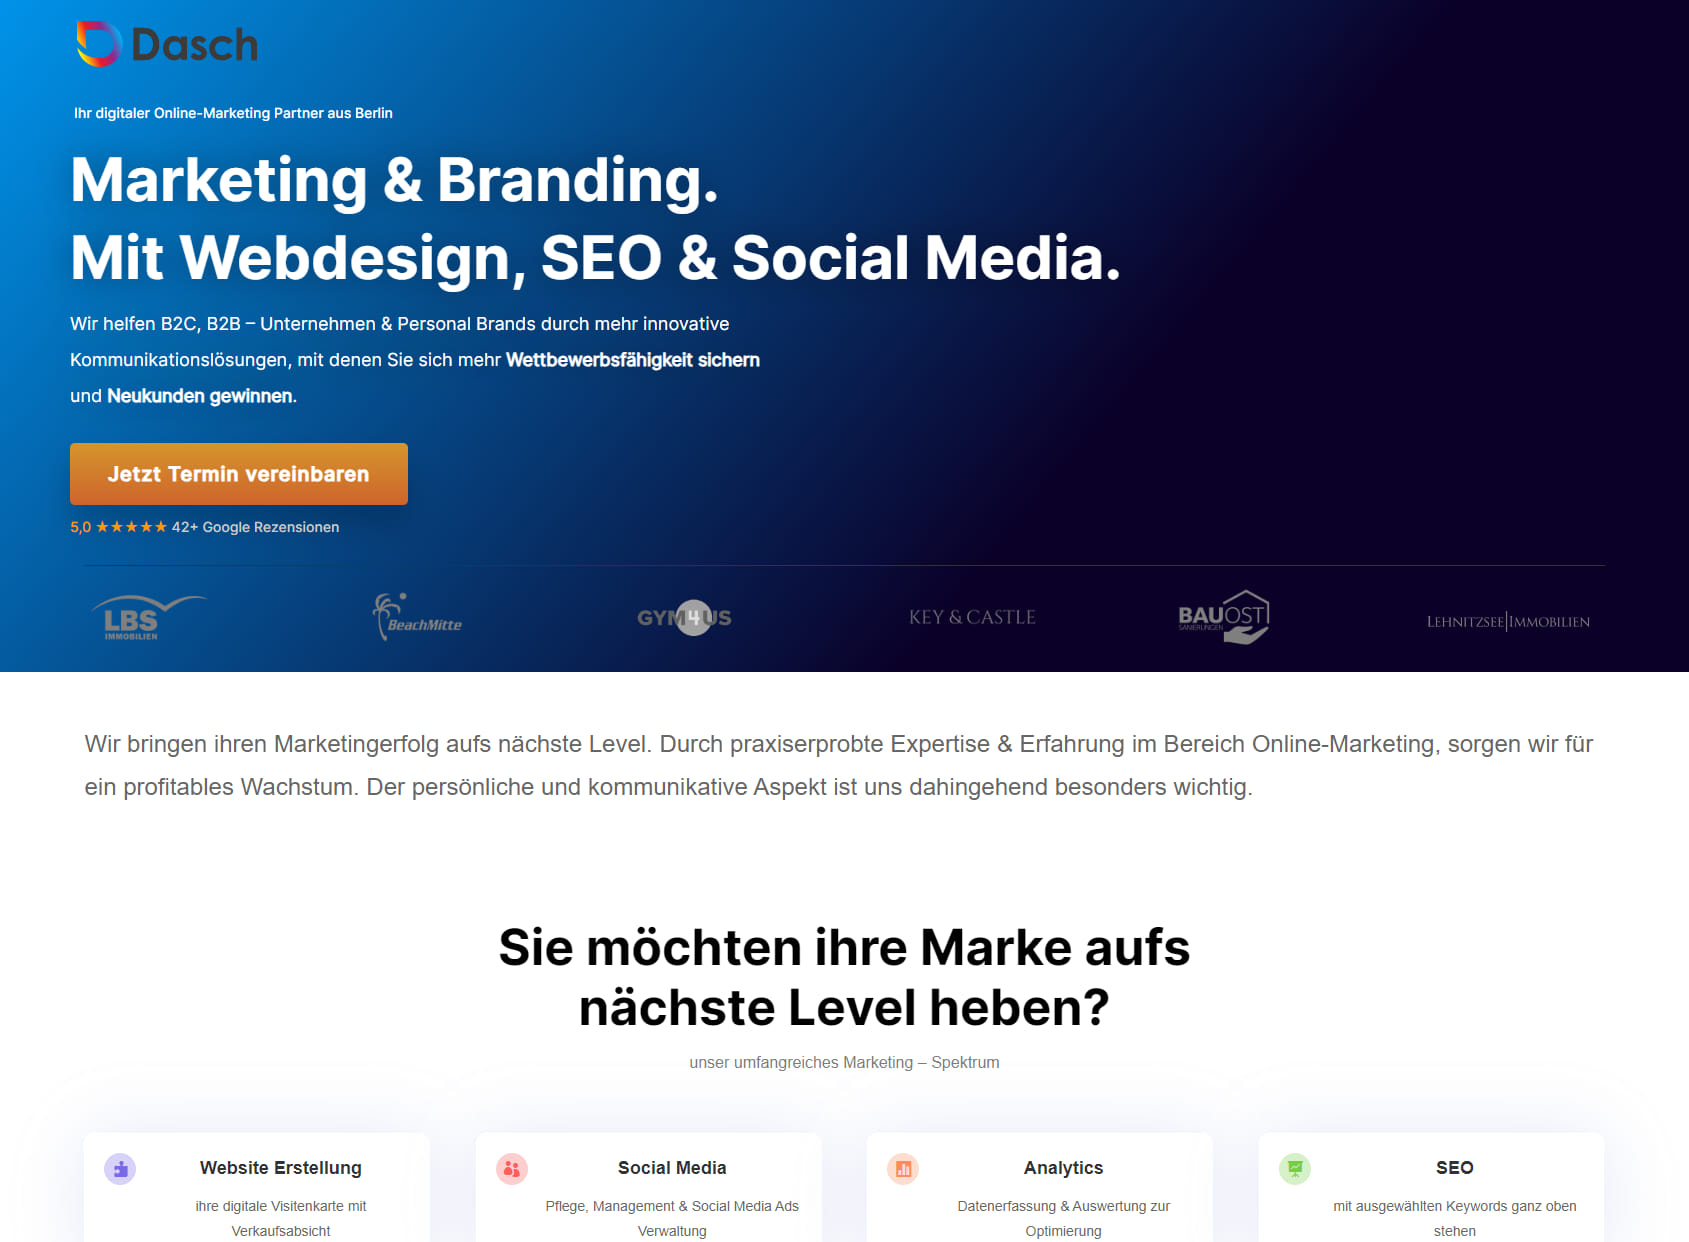 Dasch Marketing - Online-Marketing & SEO-Agentur Berlin